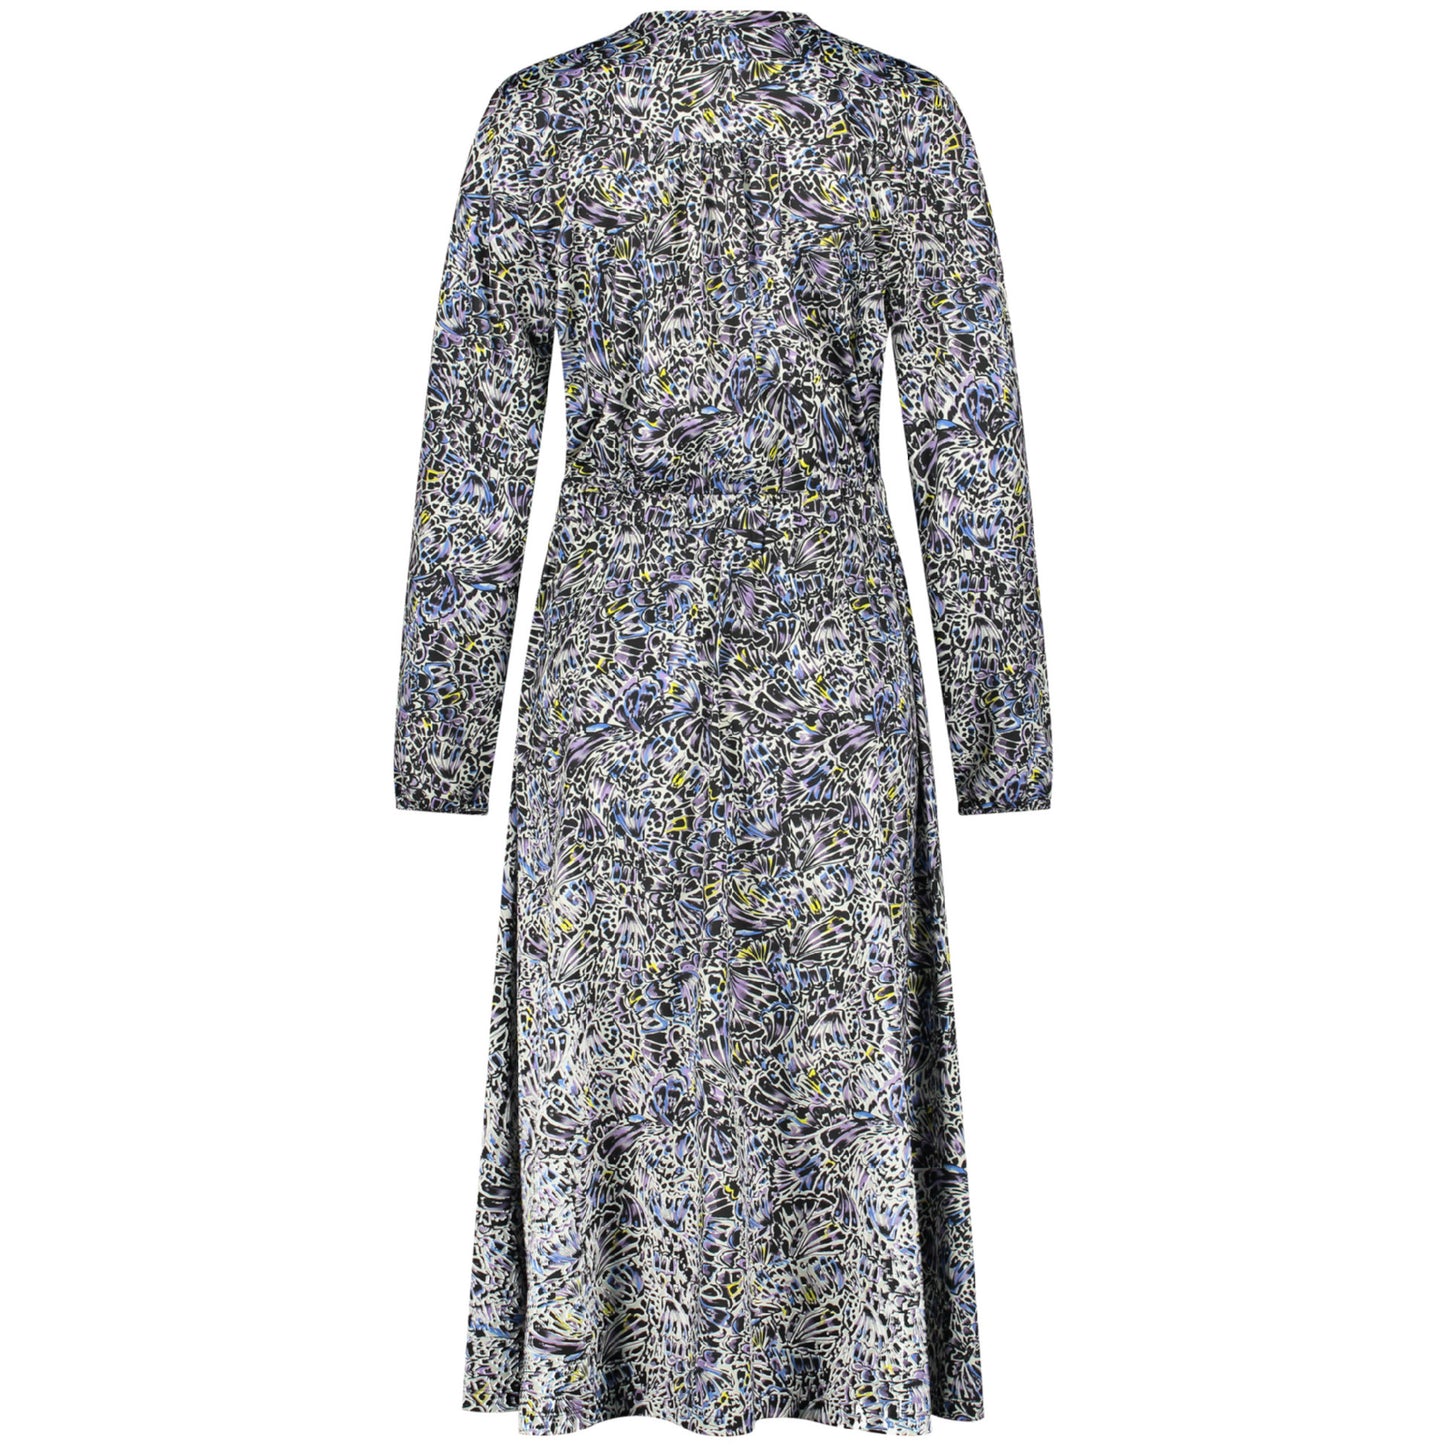 Gerry Weber 180012 35017 8089 Blue Print Knitted Dress